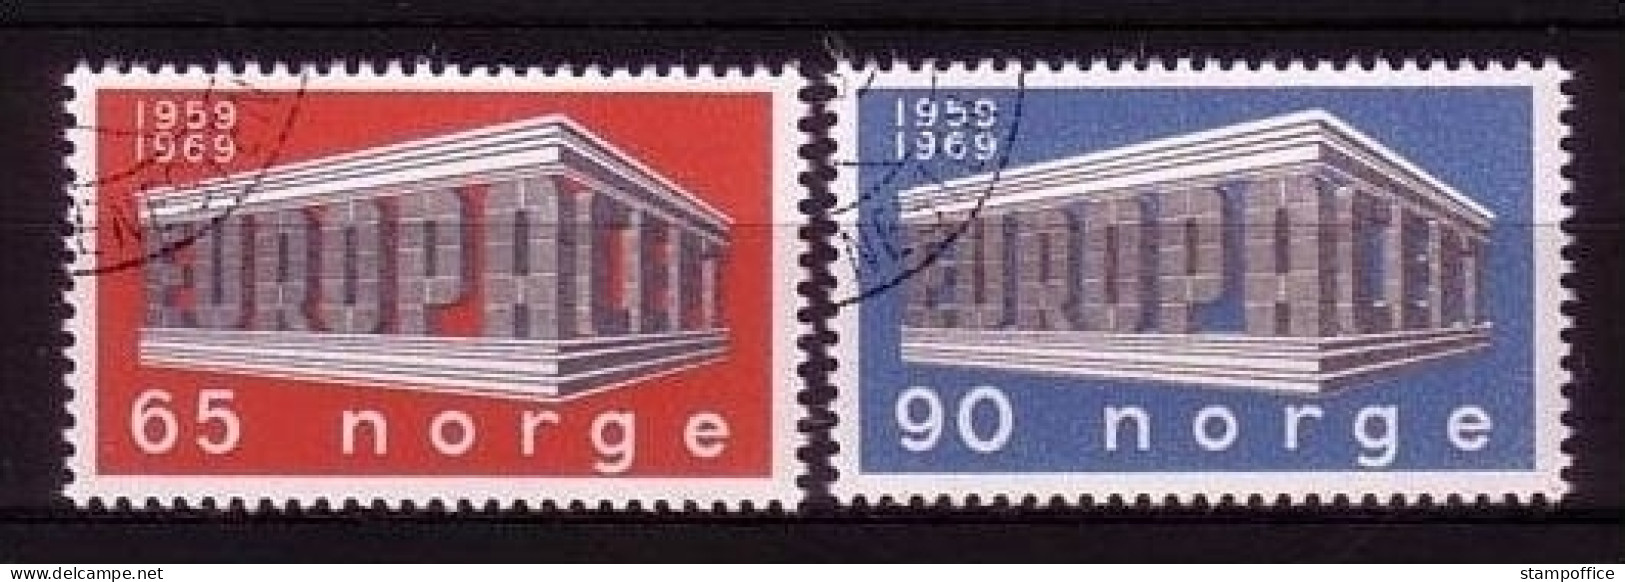 NORWEGEN MI-NR. 583-584 O EUROPA 1969 - EUROPA CEPT - 1969